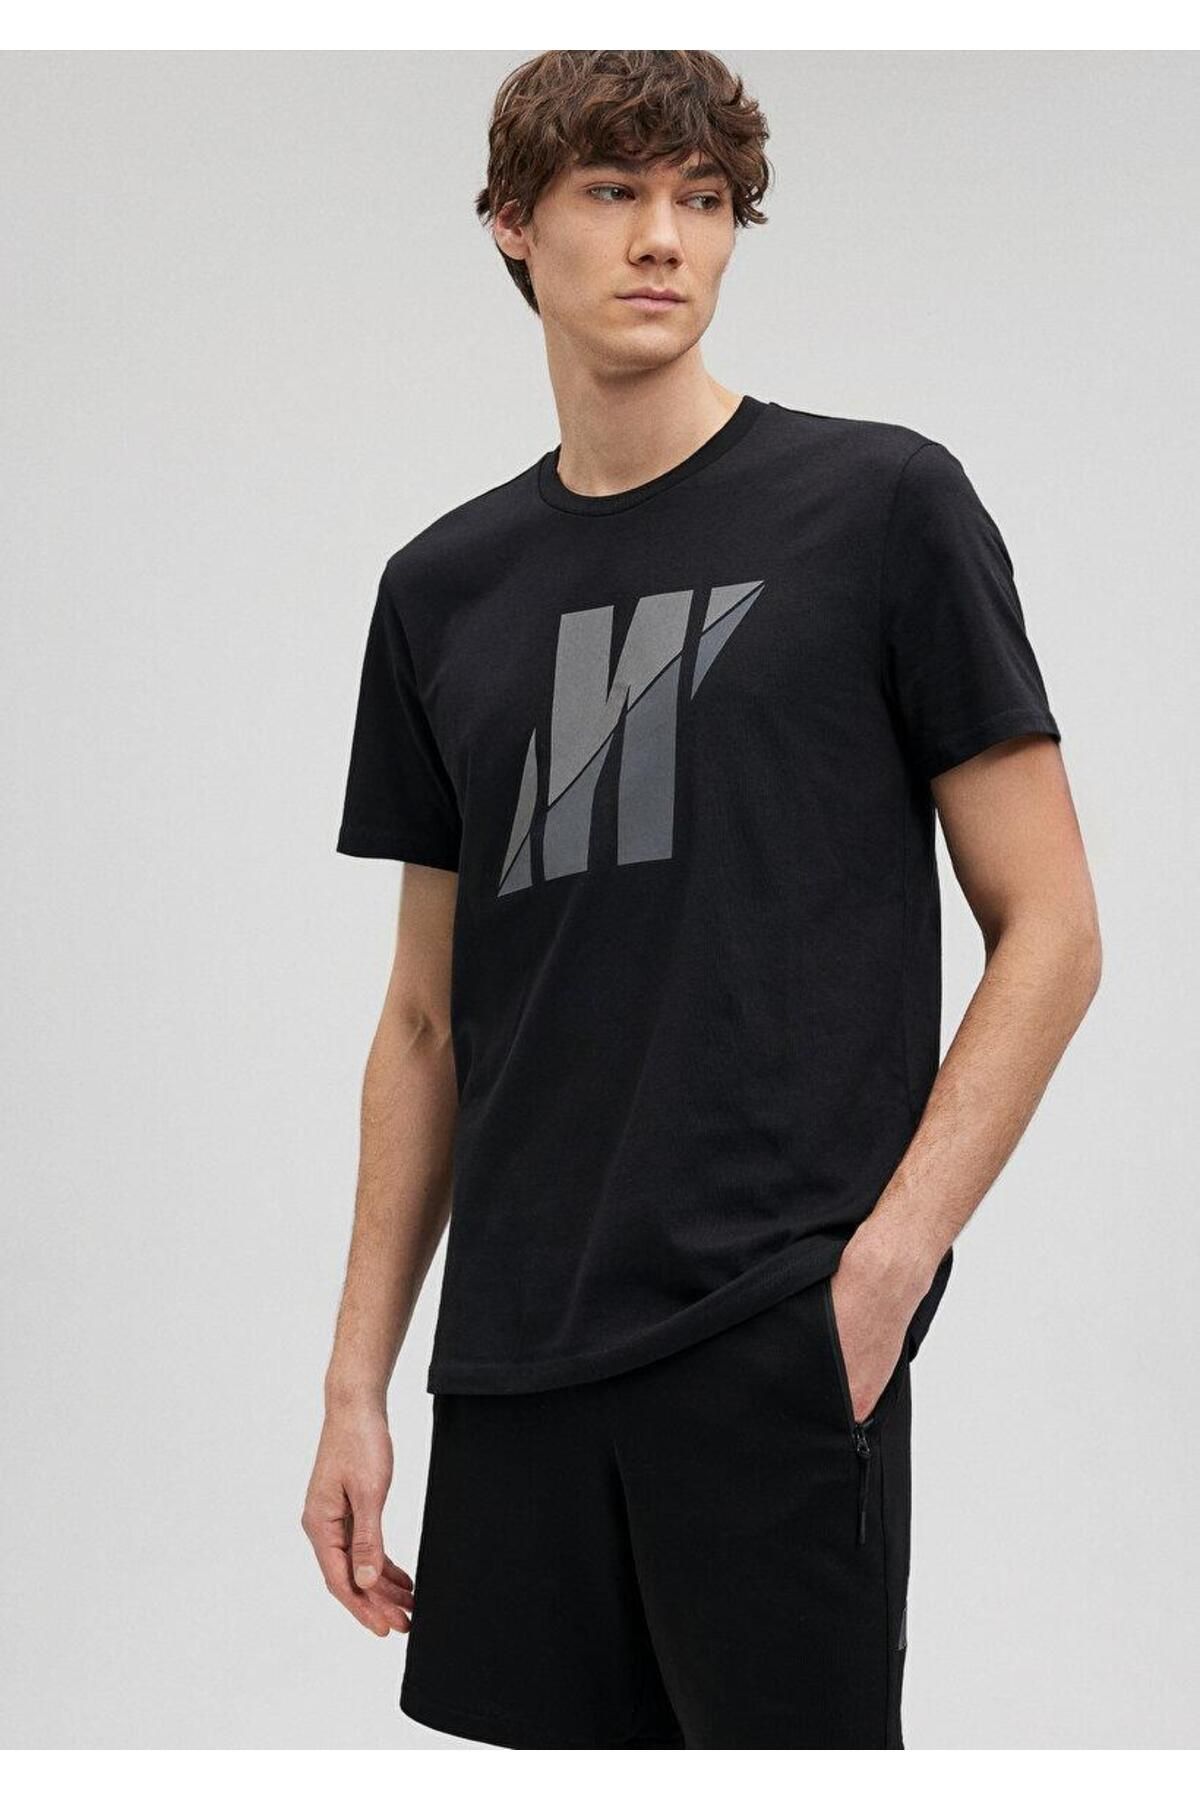 Mavi تی شرت آرم Pro Men's Black 0612174-900